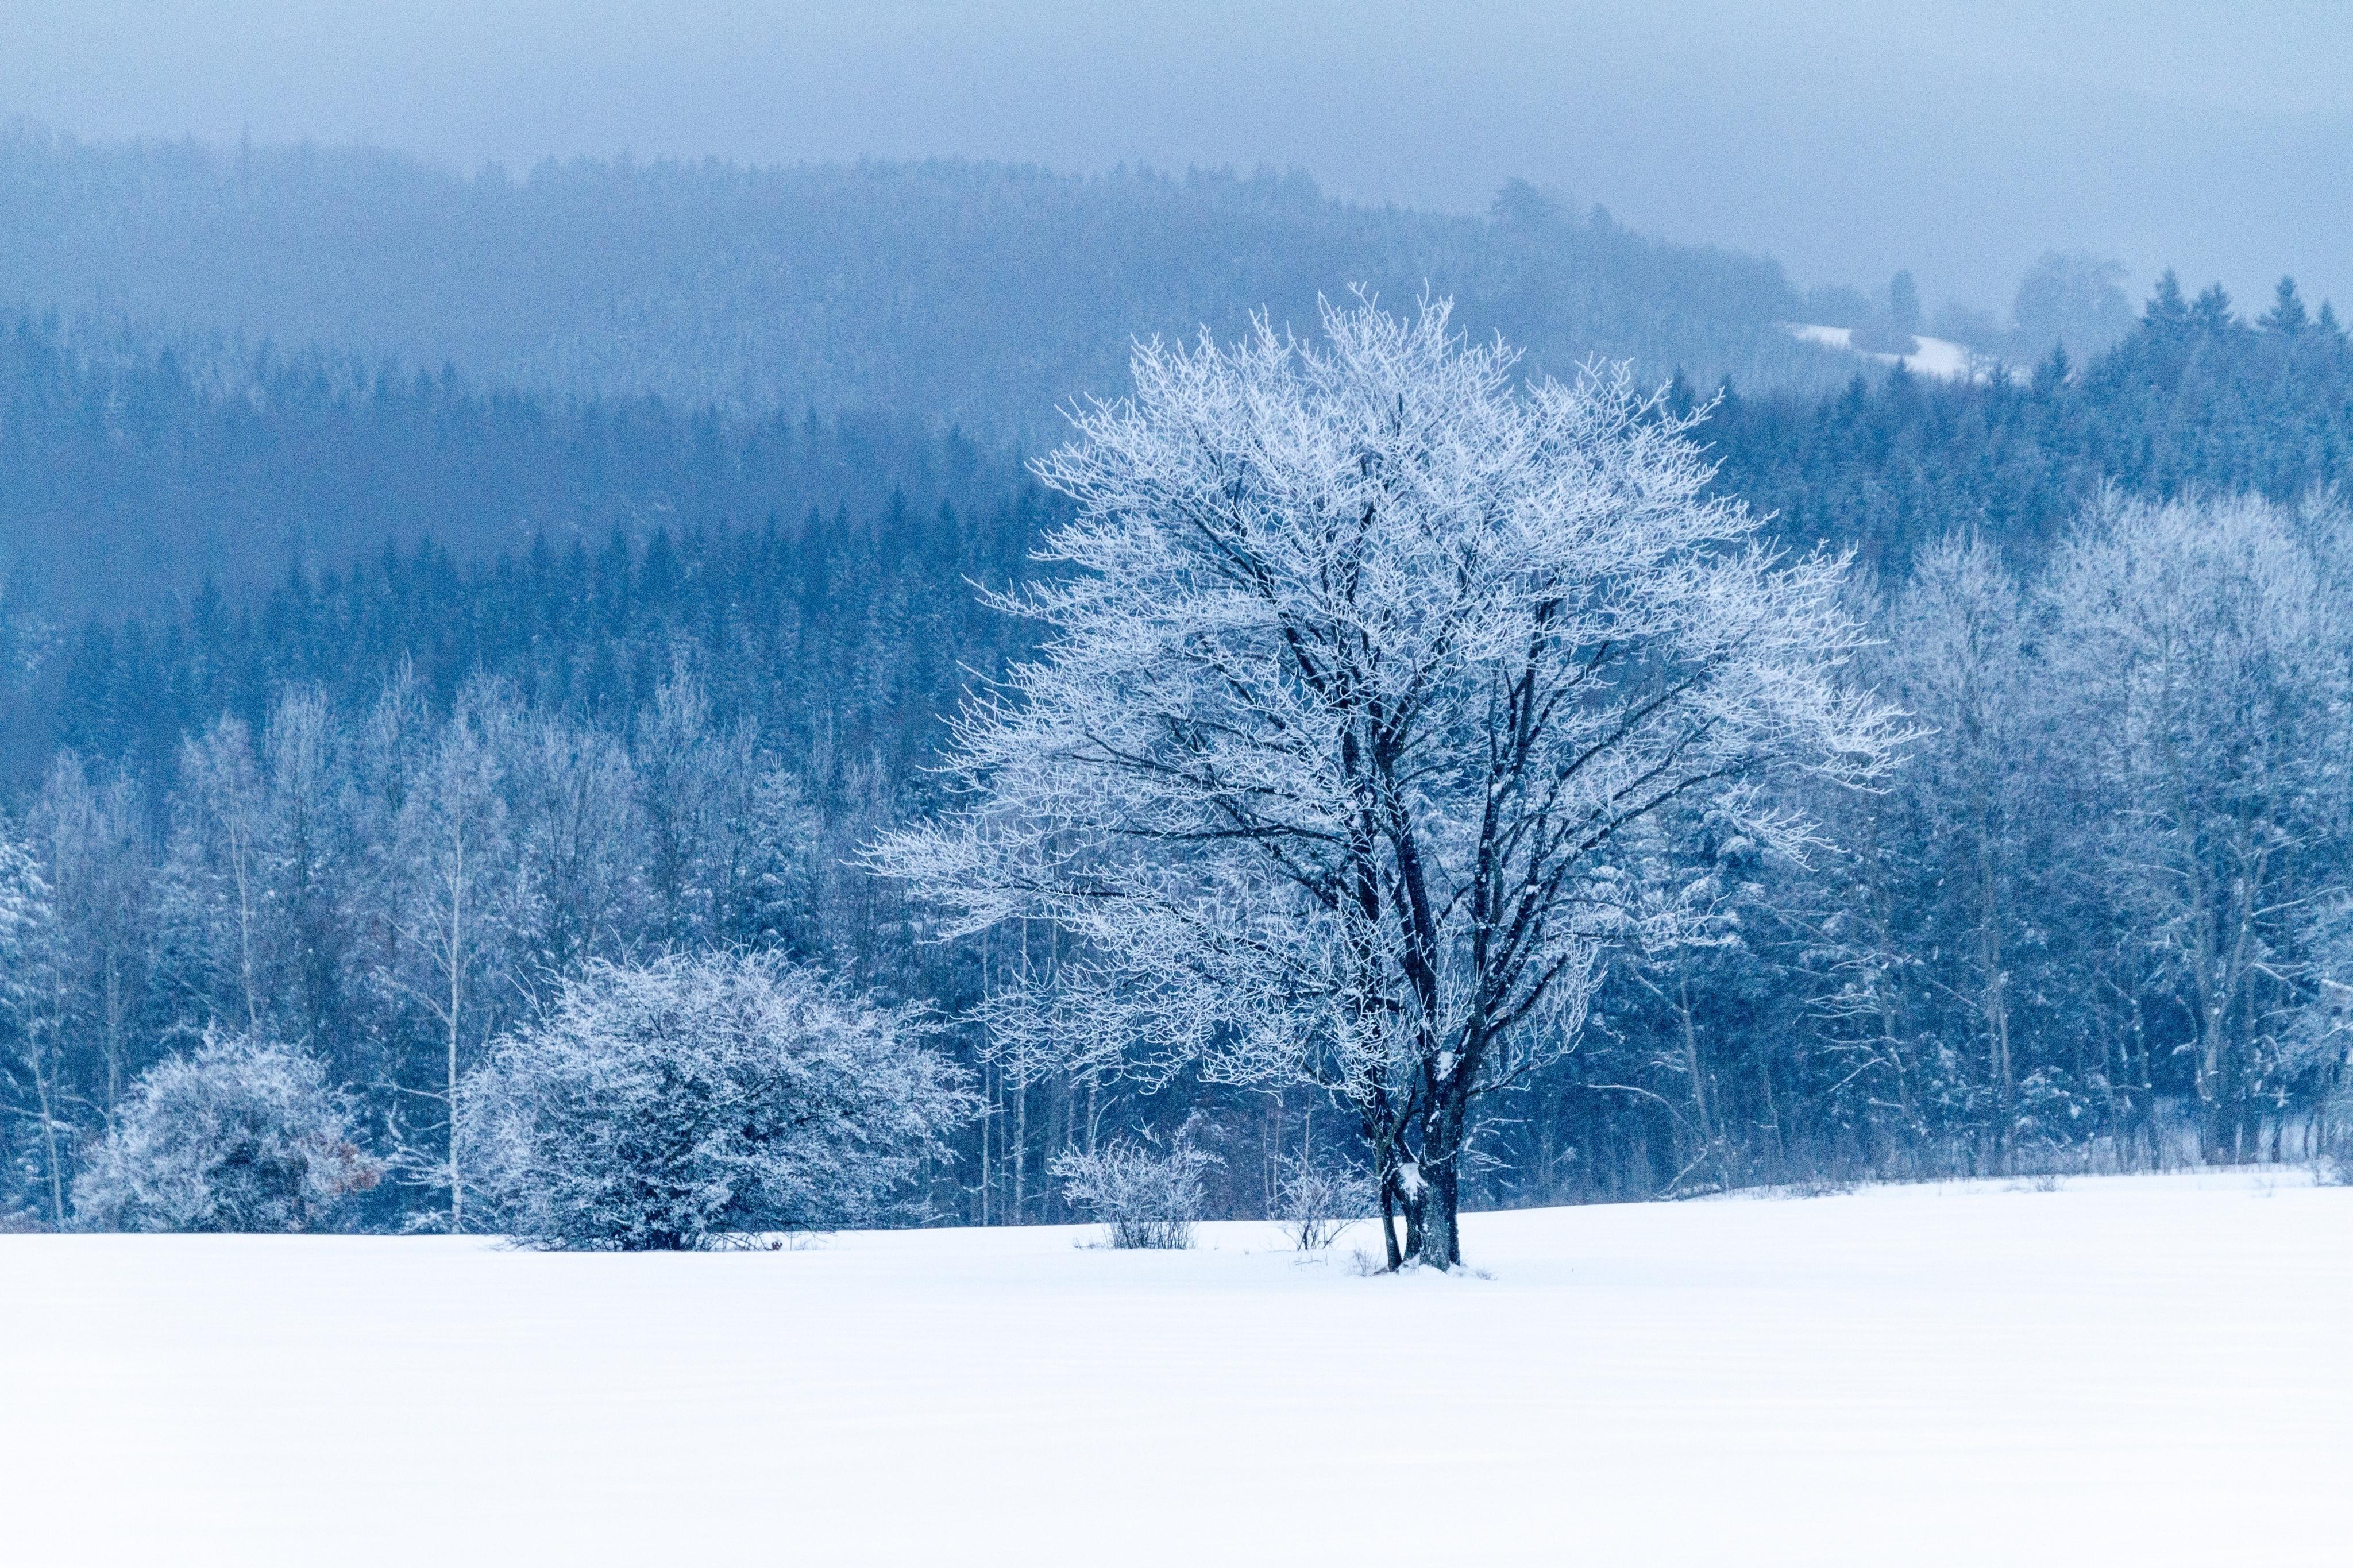 雪中的树冷色风景高清壁纸大全 高清桌面壁纸下载 -找素材网